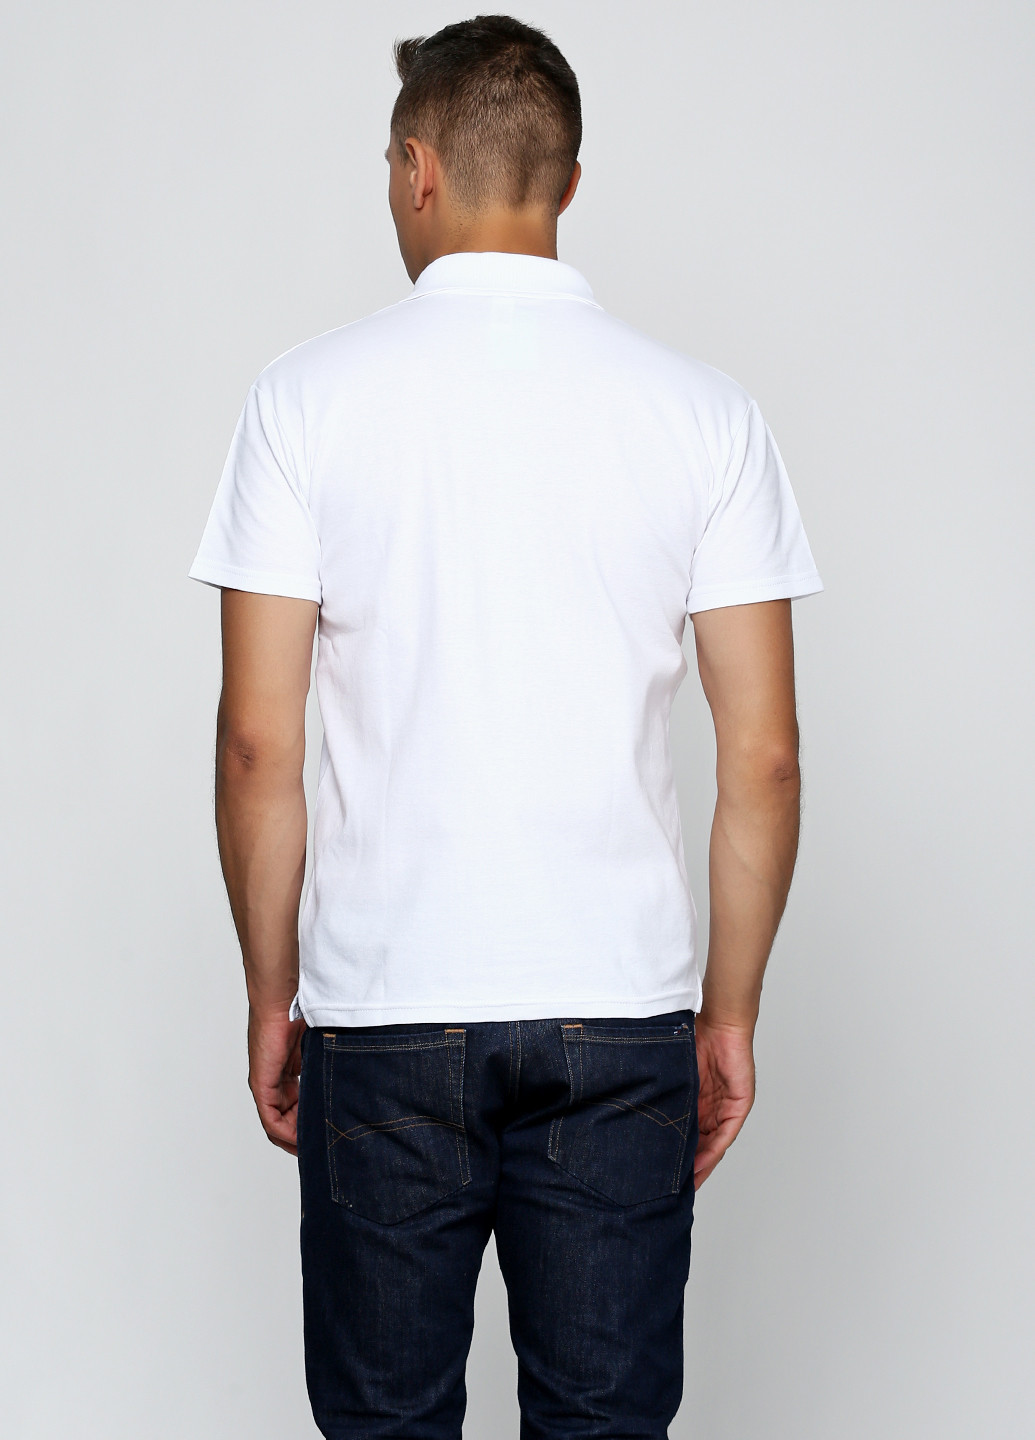 Белая футболка-поло для мужчин Роза